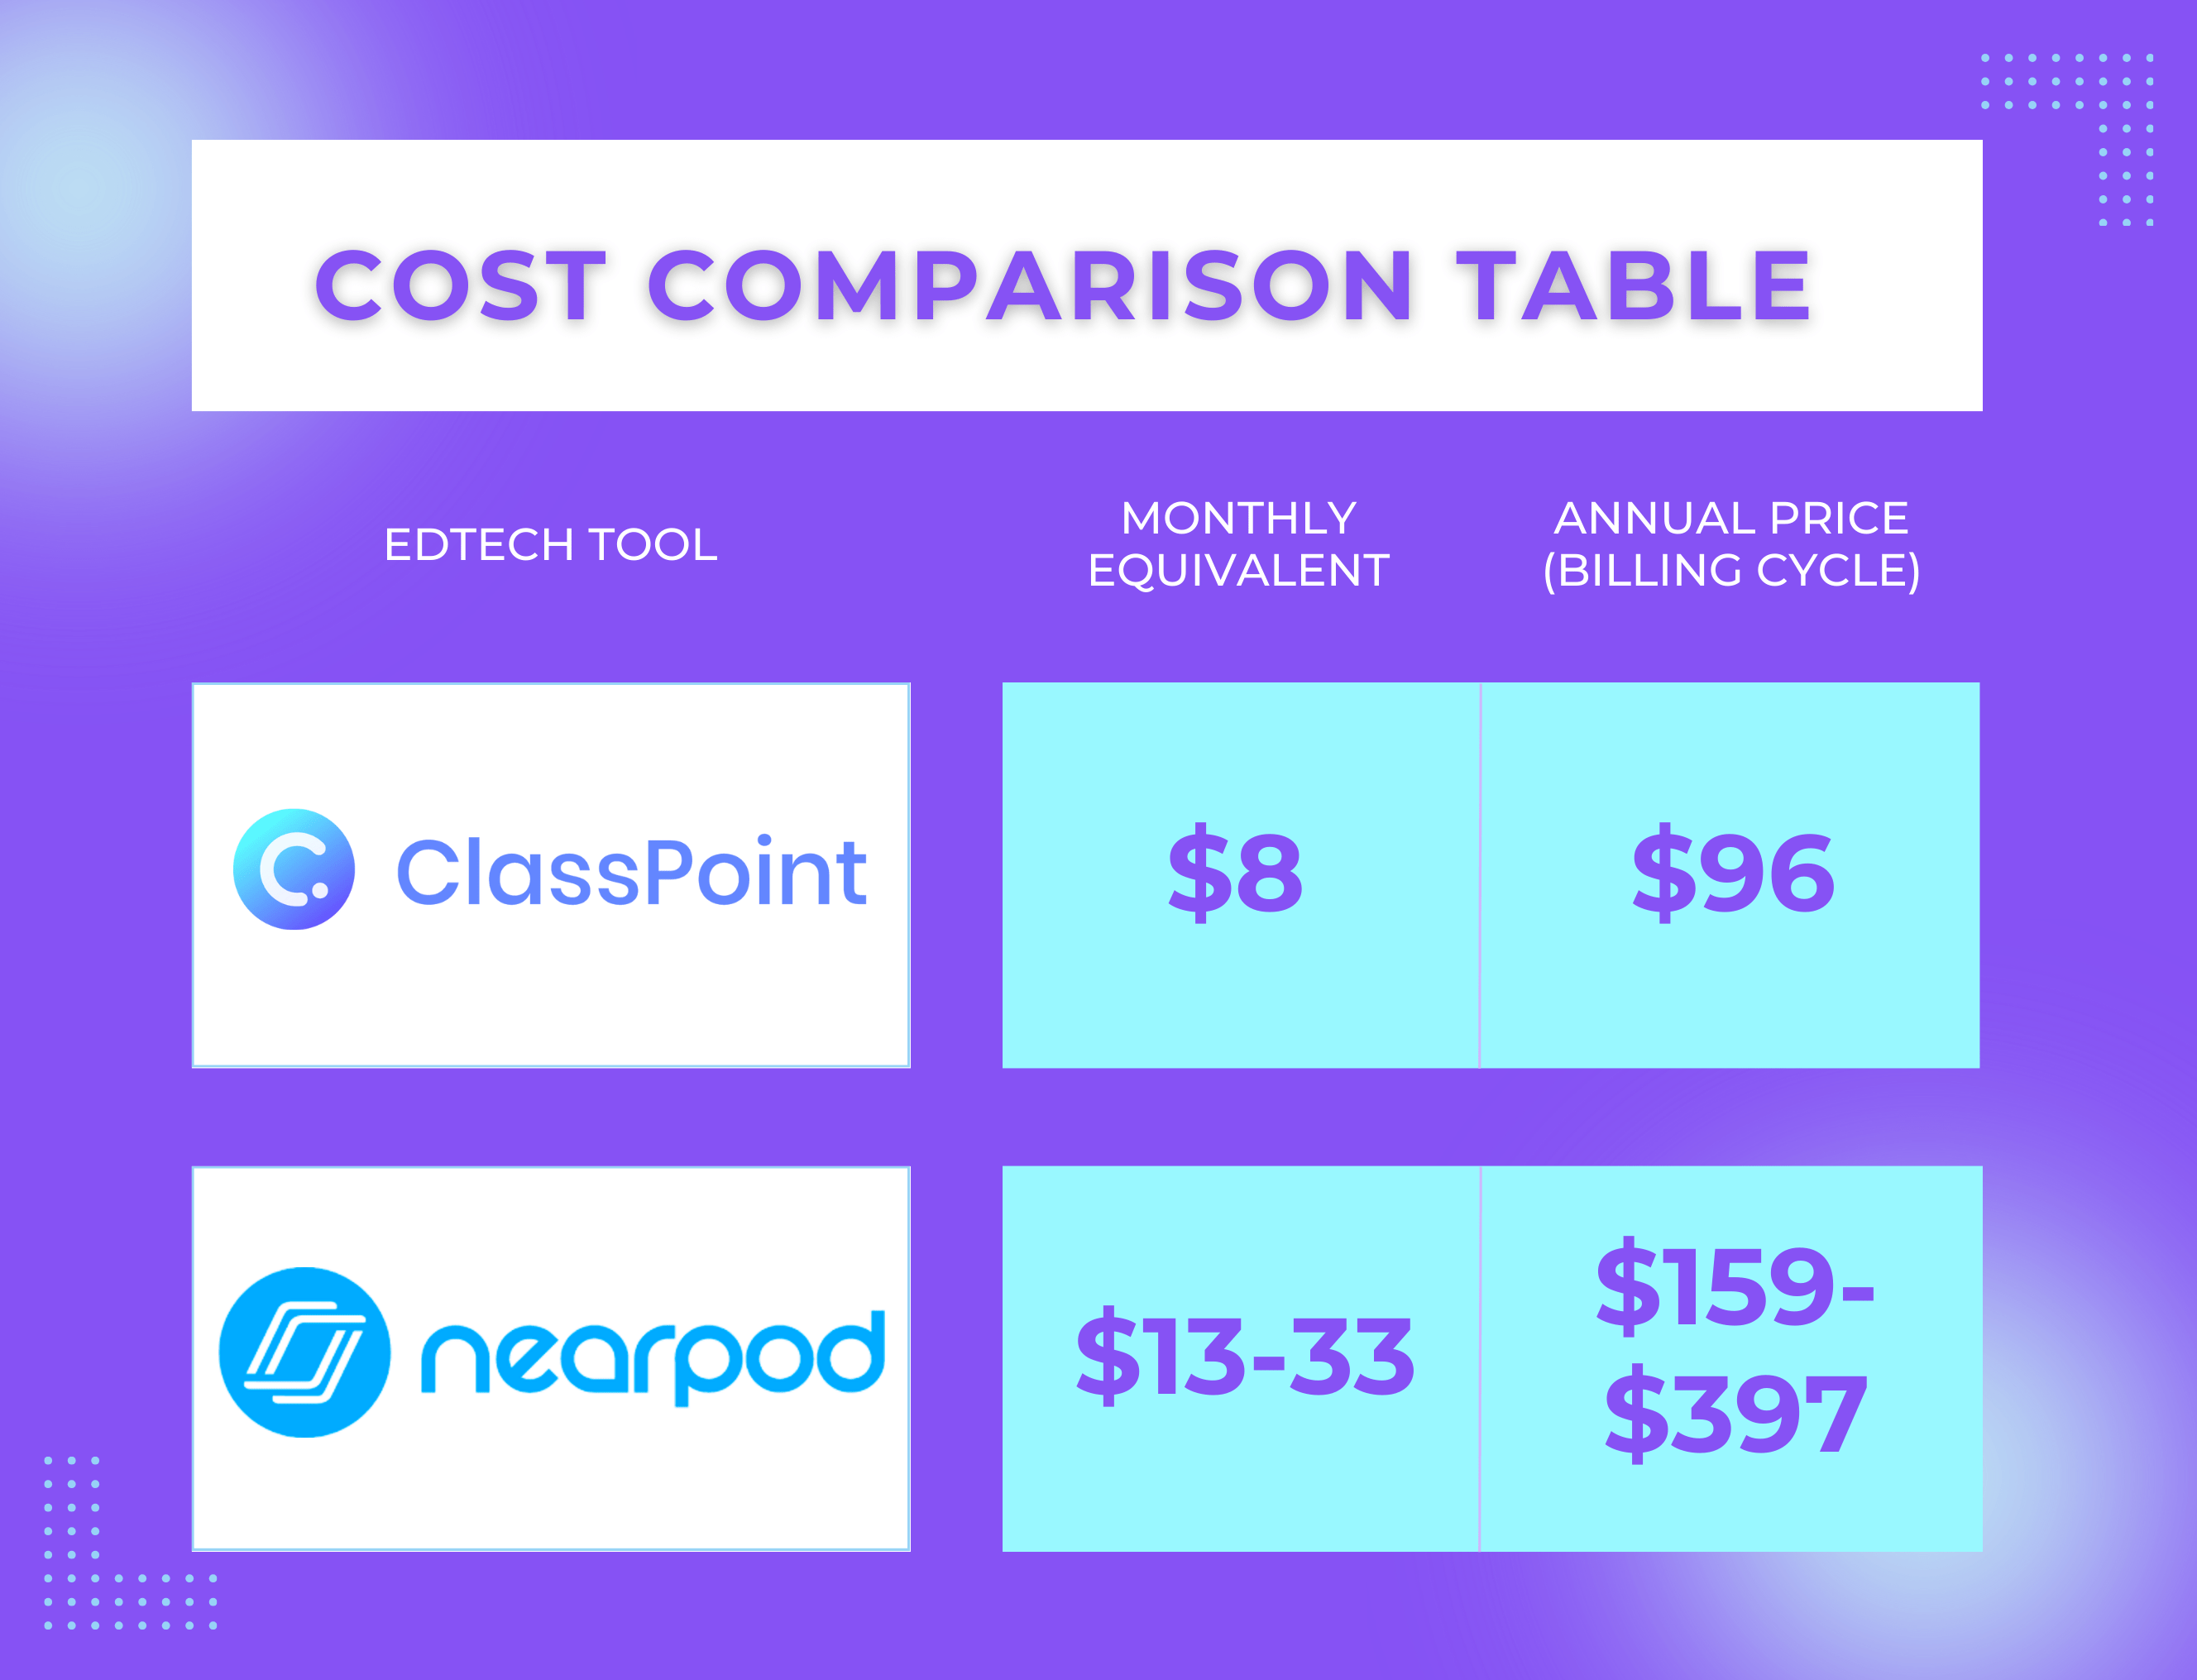 ClassPointとNearpodの価格比較